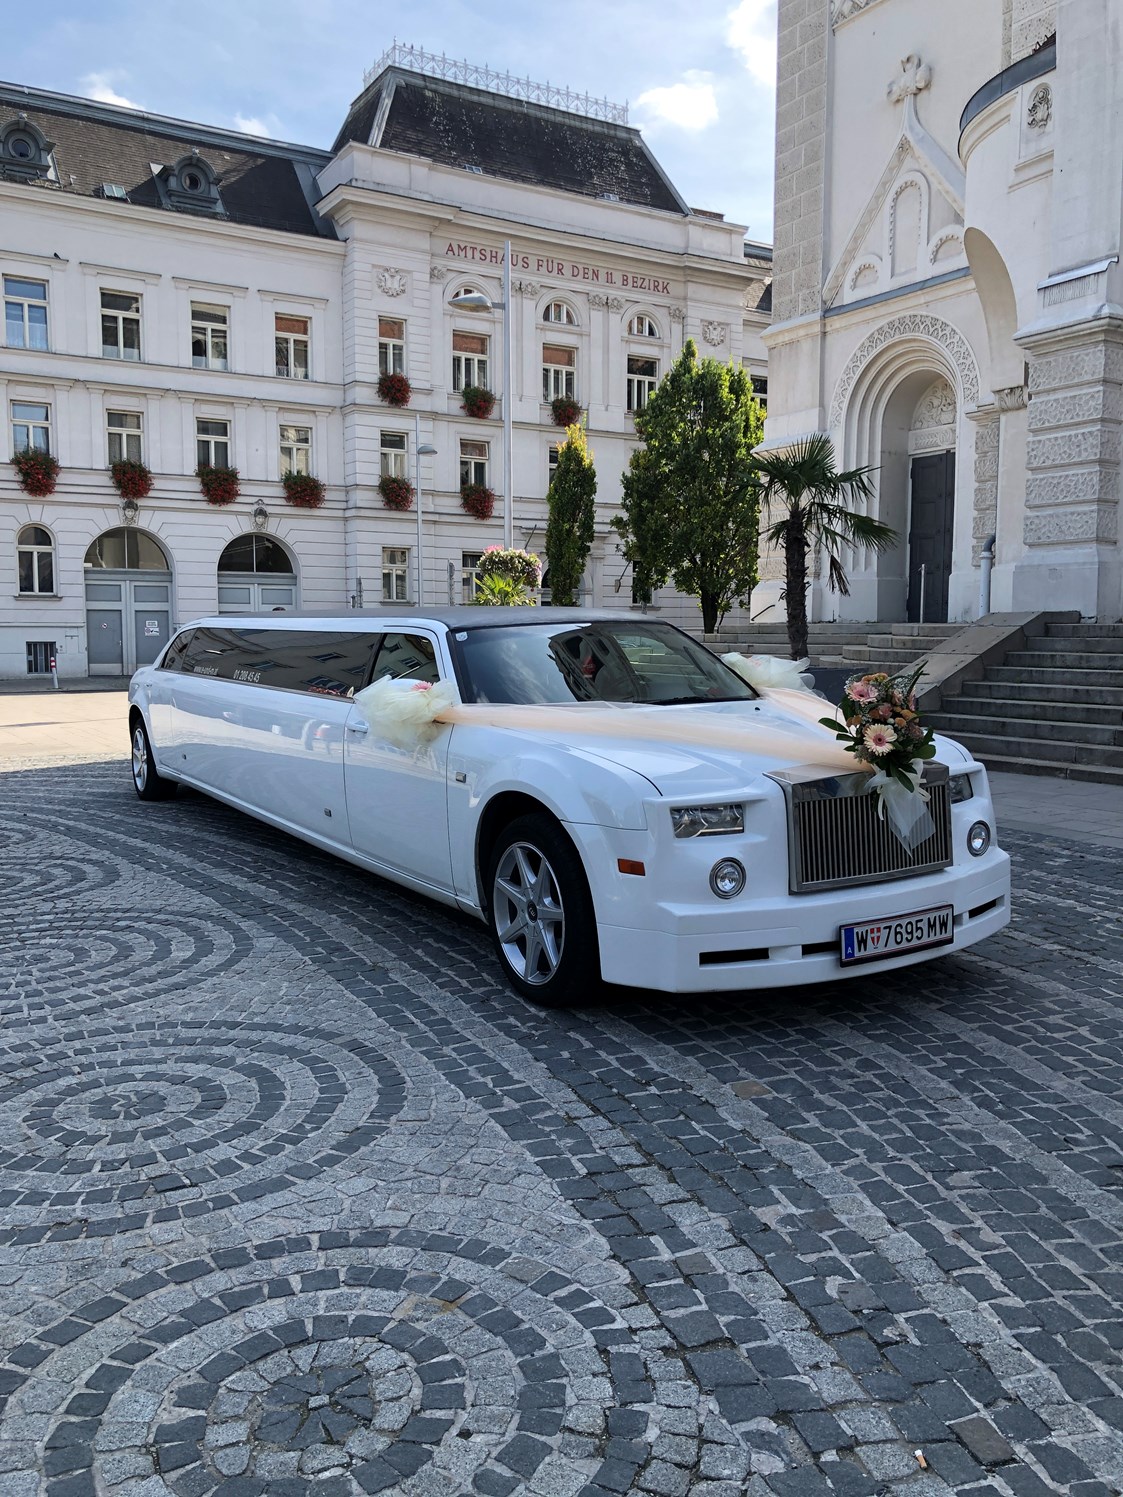 Hochzeitsauto: Hochzeitsauto mieten Wien - E&M Stretchlimousine mieten Wien